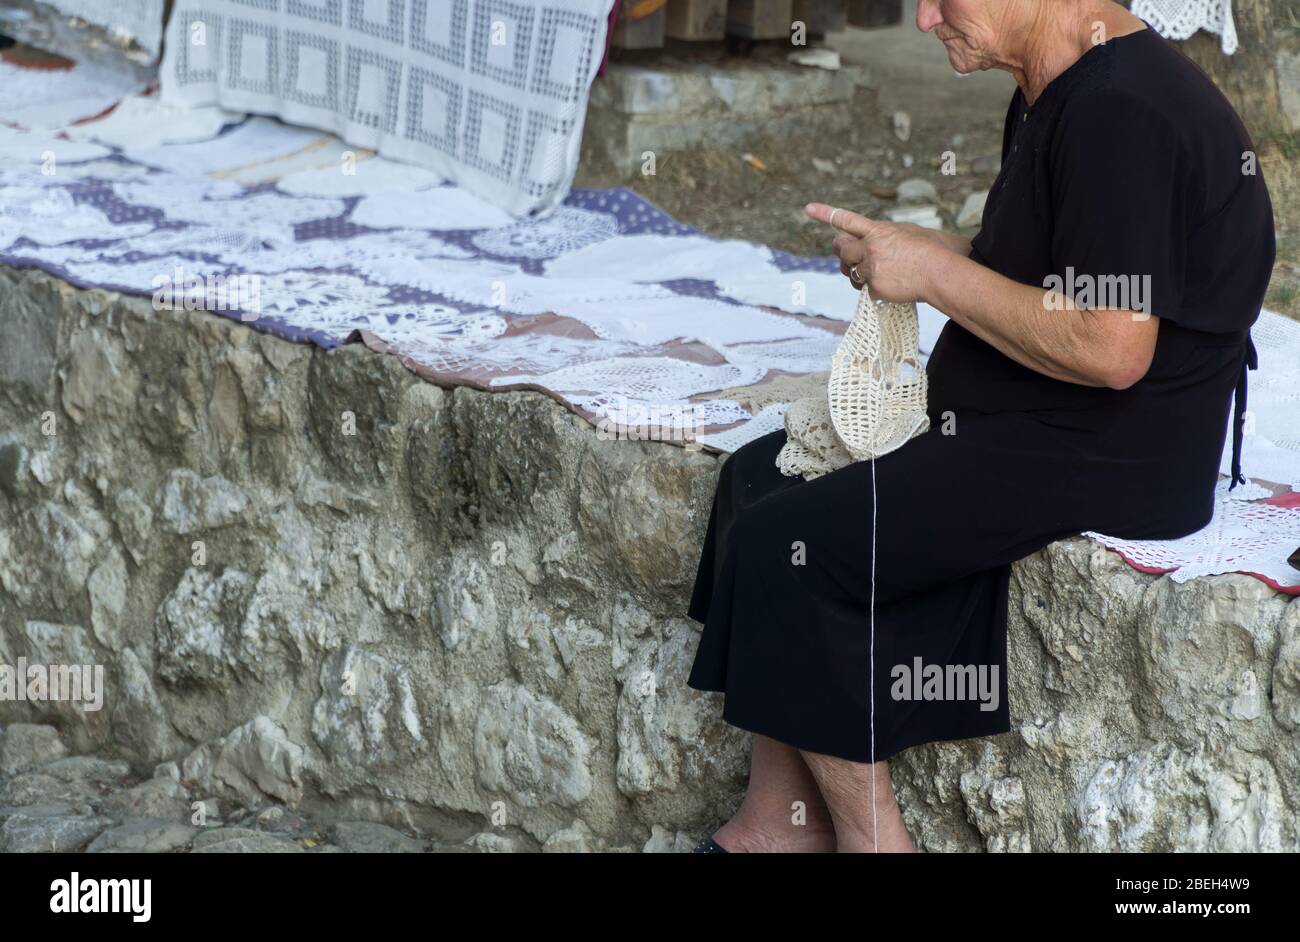 Eine alte Frau, die ein schwarzes Kleid trägt, macht dekorative Spitzenservietten mit einem Häkeln. Handarbeiten, Häkeln. KRUJE, ALBANIEN, 19. SEPTEMBER 2019. Stockfoto